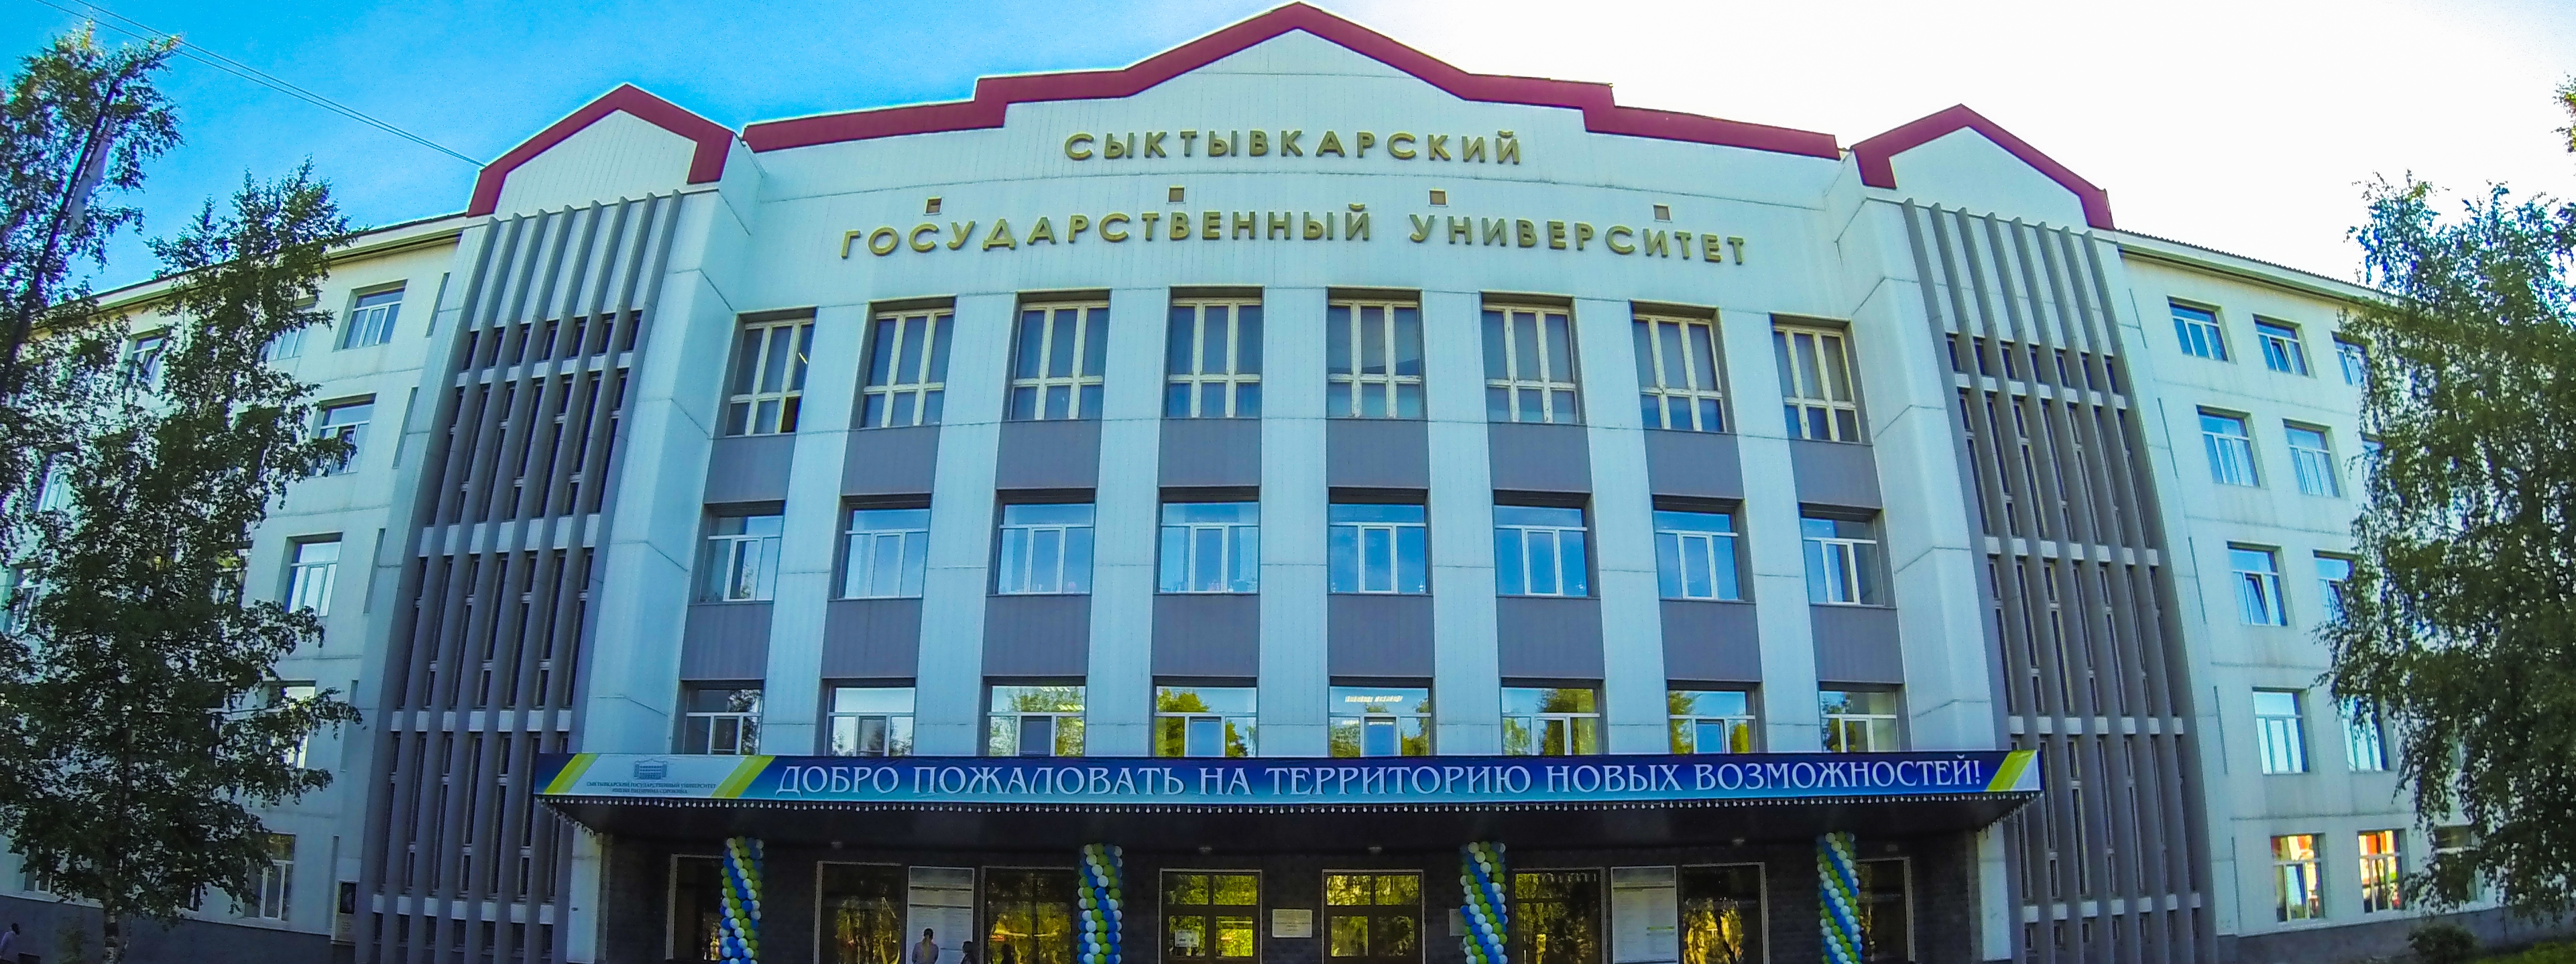 Ольга Сотникова пригласила муниципалитеты республики делать заказ на образовательные программы